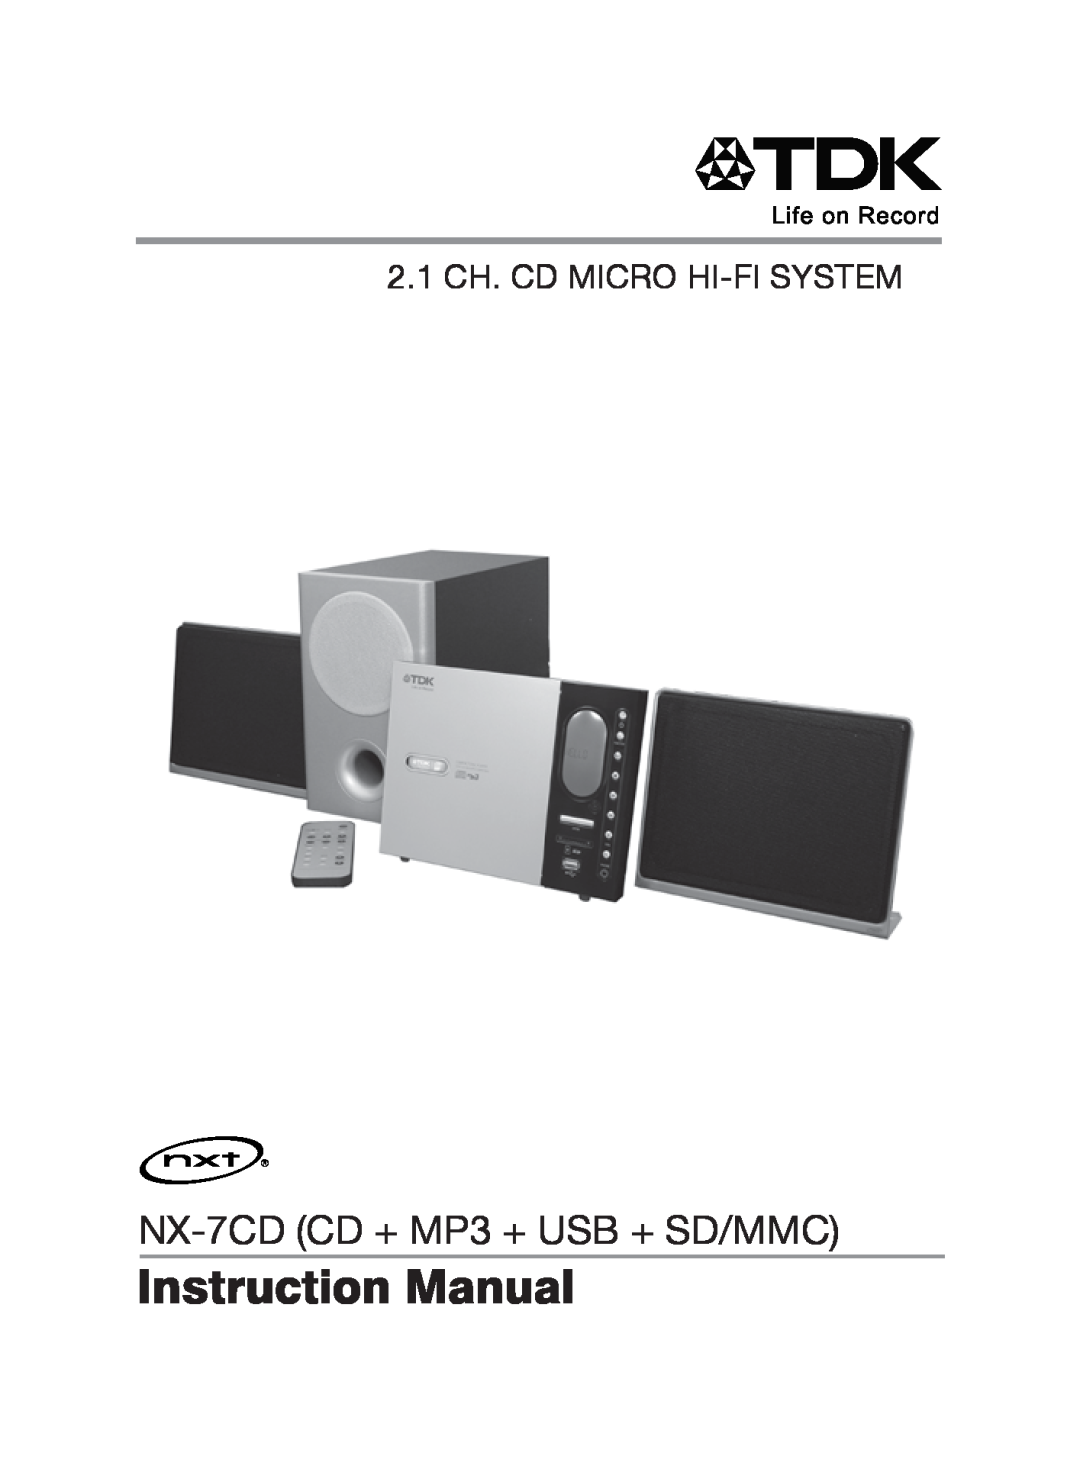 TDK manual NX-7CDCD + MP3 + USB + SD/MMC, 2.1 CH. CD MICRO HI-FISYSTEM 